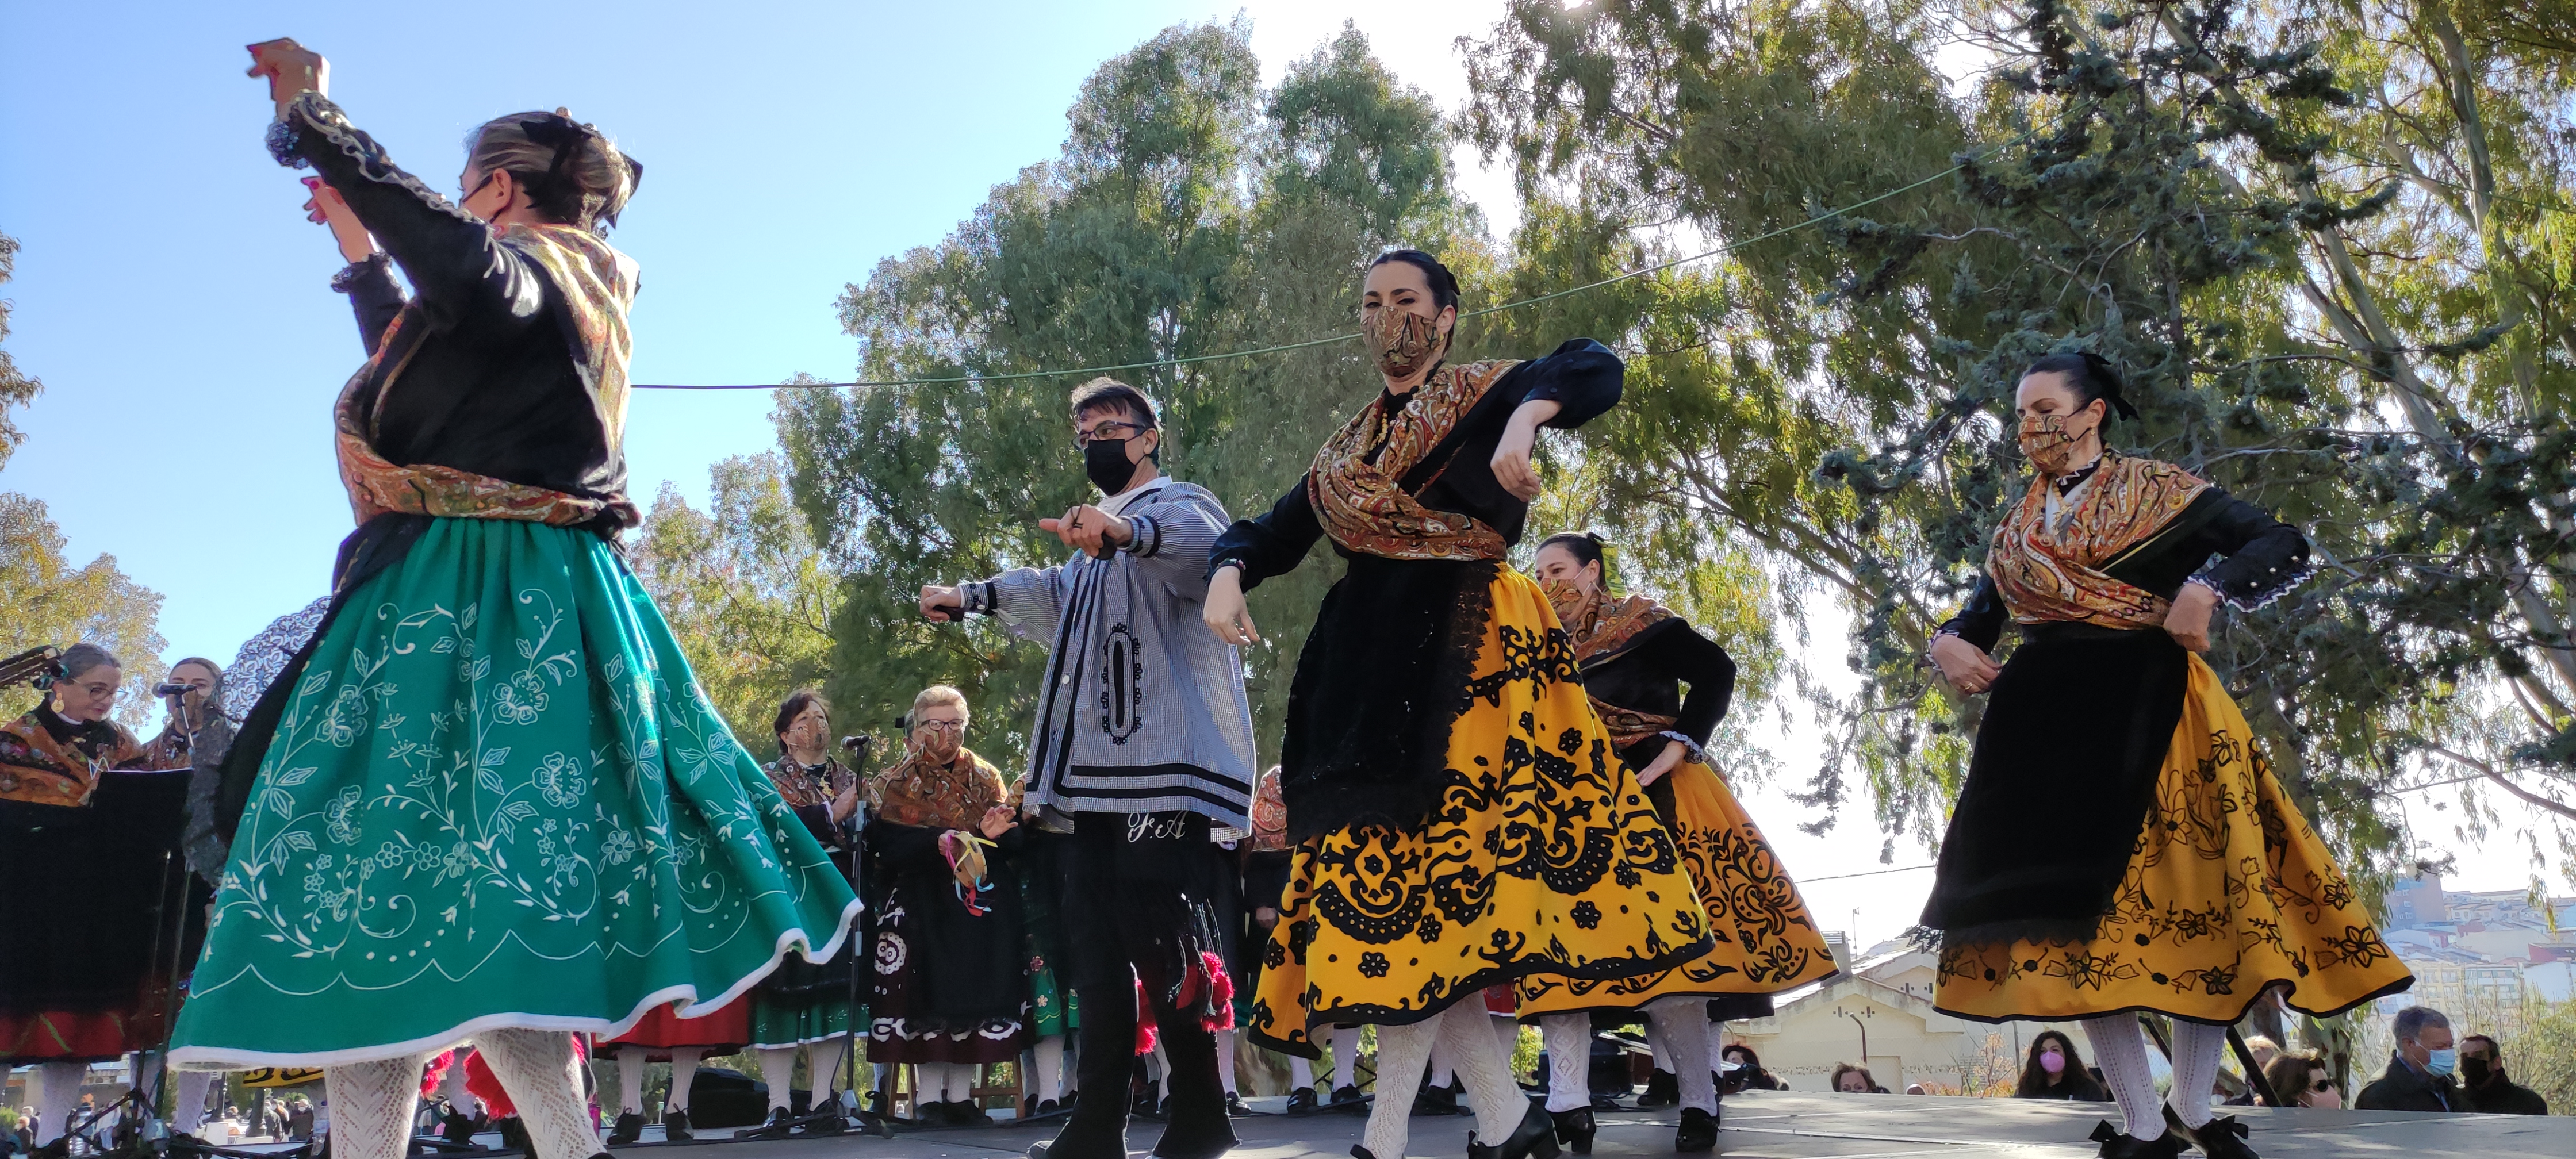 Grupo folklórico bailando en la Romería de los Santos Mártires